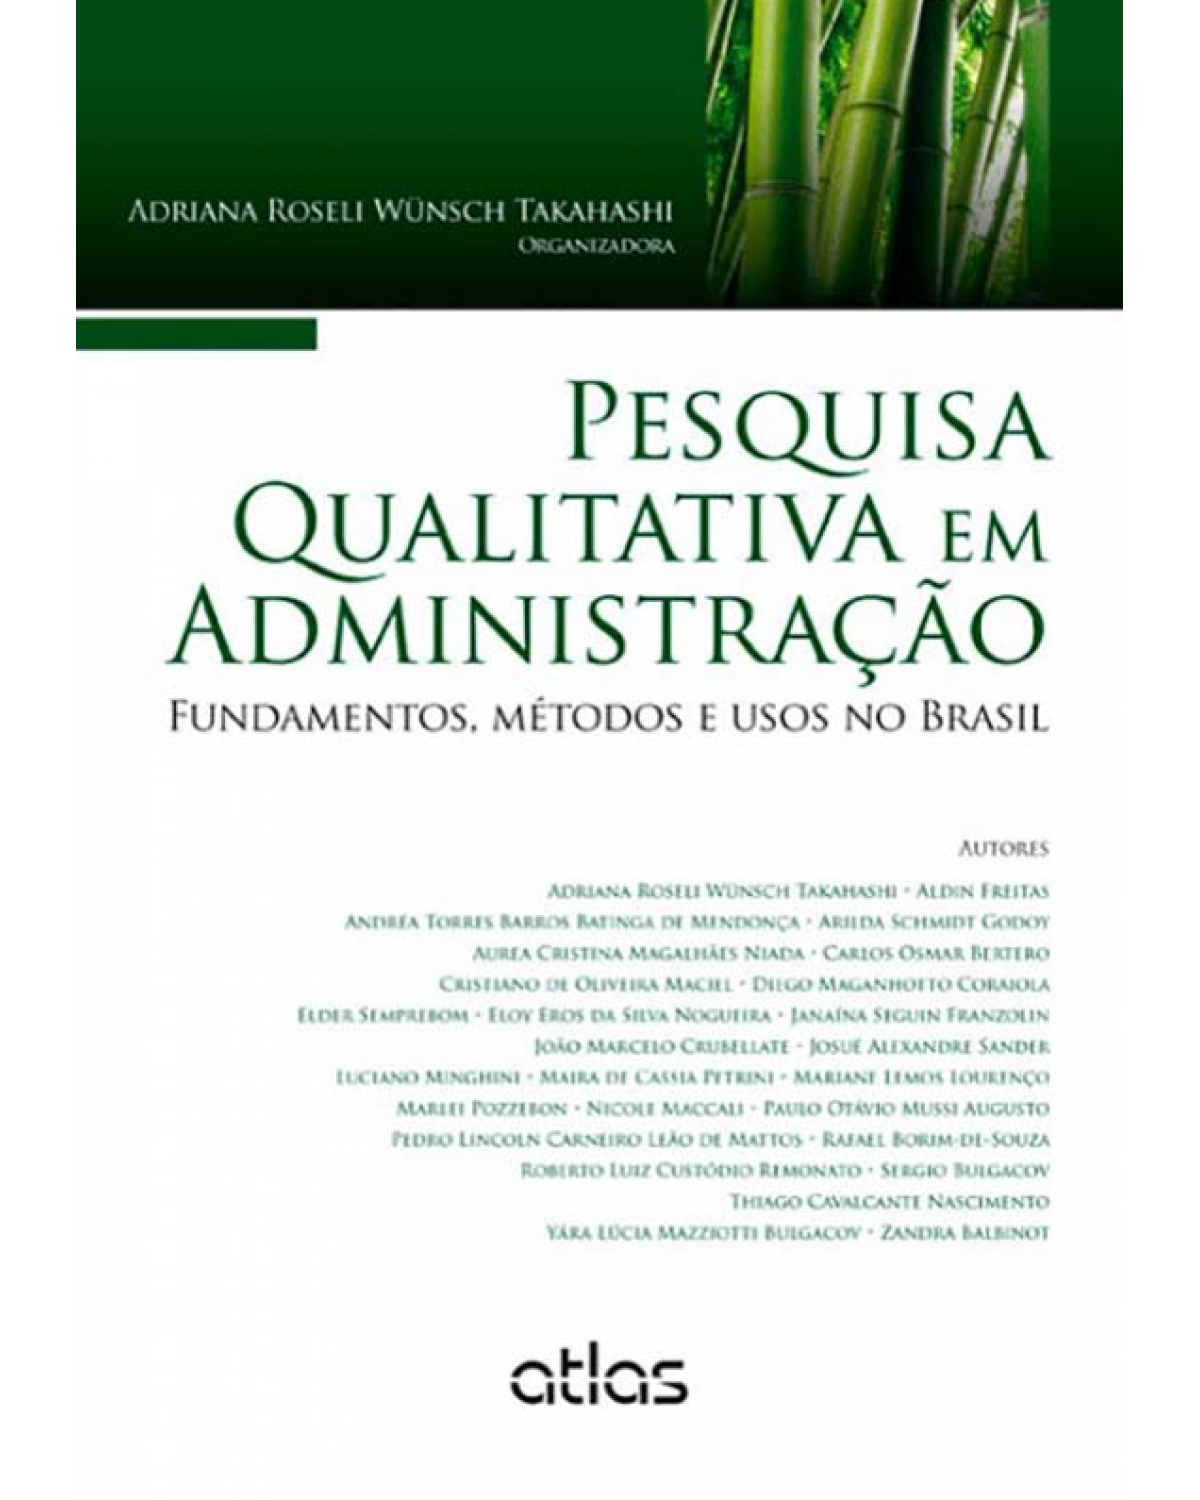 Pesquisa qualitativa em administração - Fundamentos, métodos e usos no Brasil - 1ª Edição | 2013